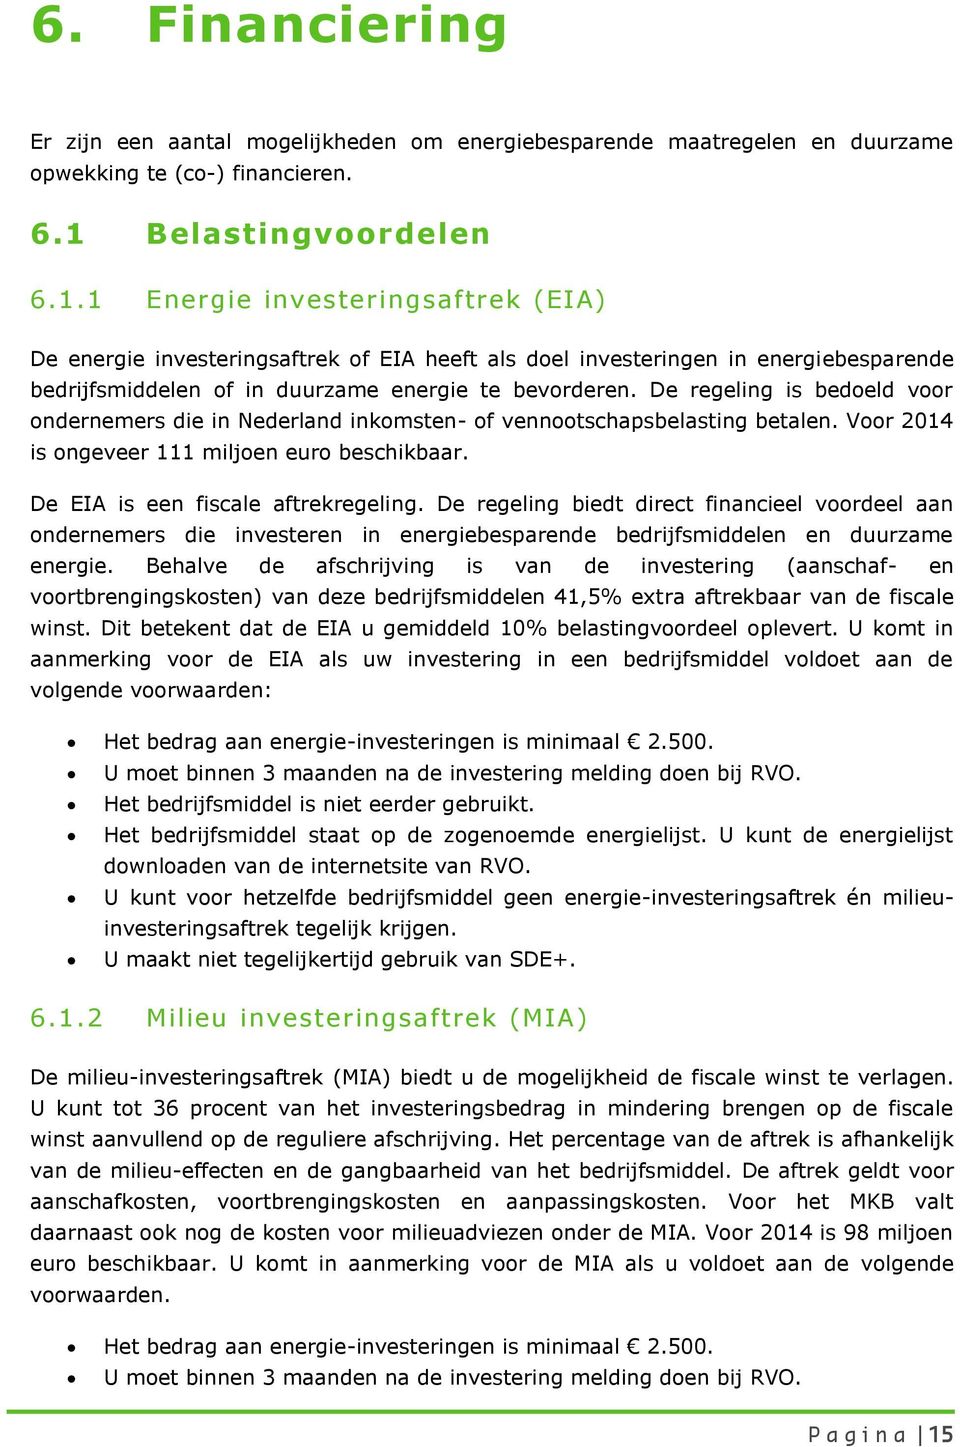 De regeling is bedoeld voor ondernemers die in Nederland inkomsten- of vennootschapsbelasting betalen. Voor 2014 is ongeveer 111 miljoen euro beschikbaar. De EIA is een fiscale aftrekregeling.